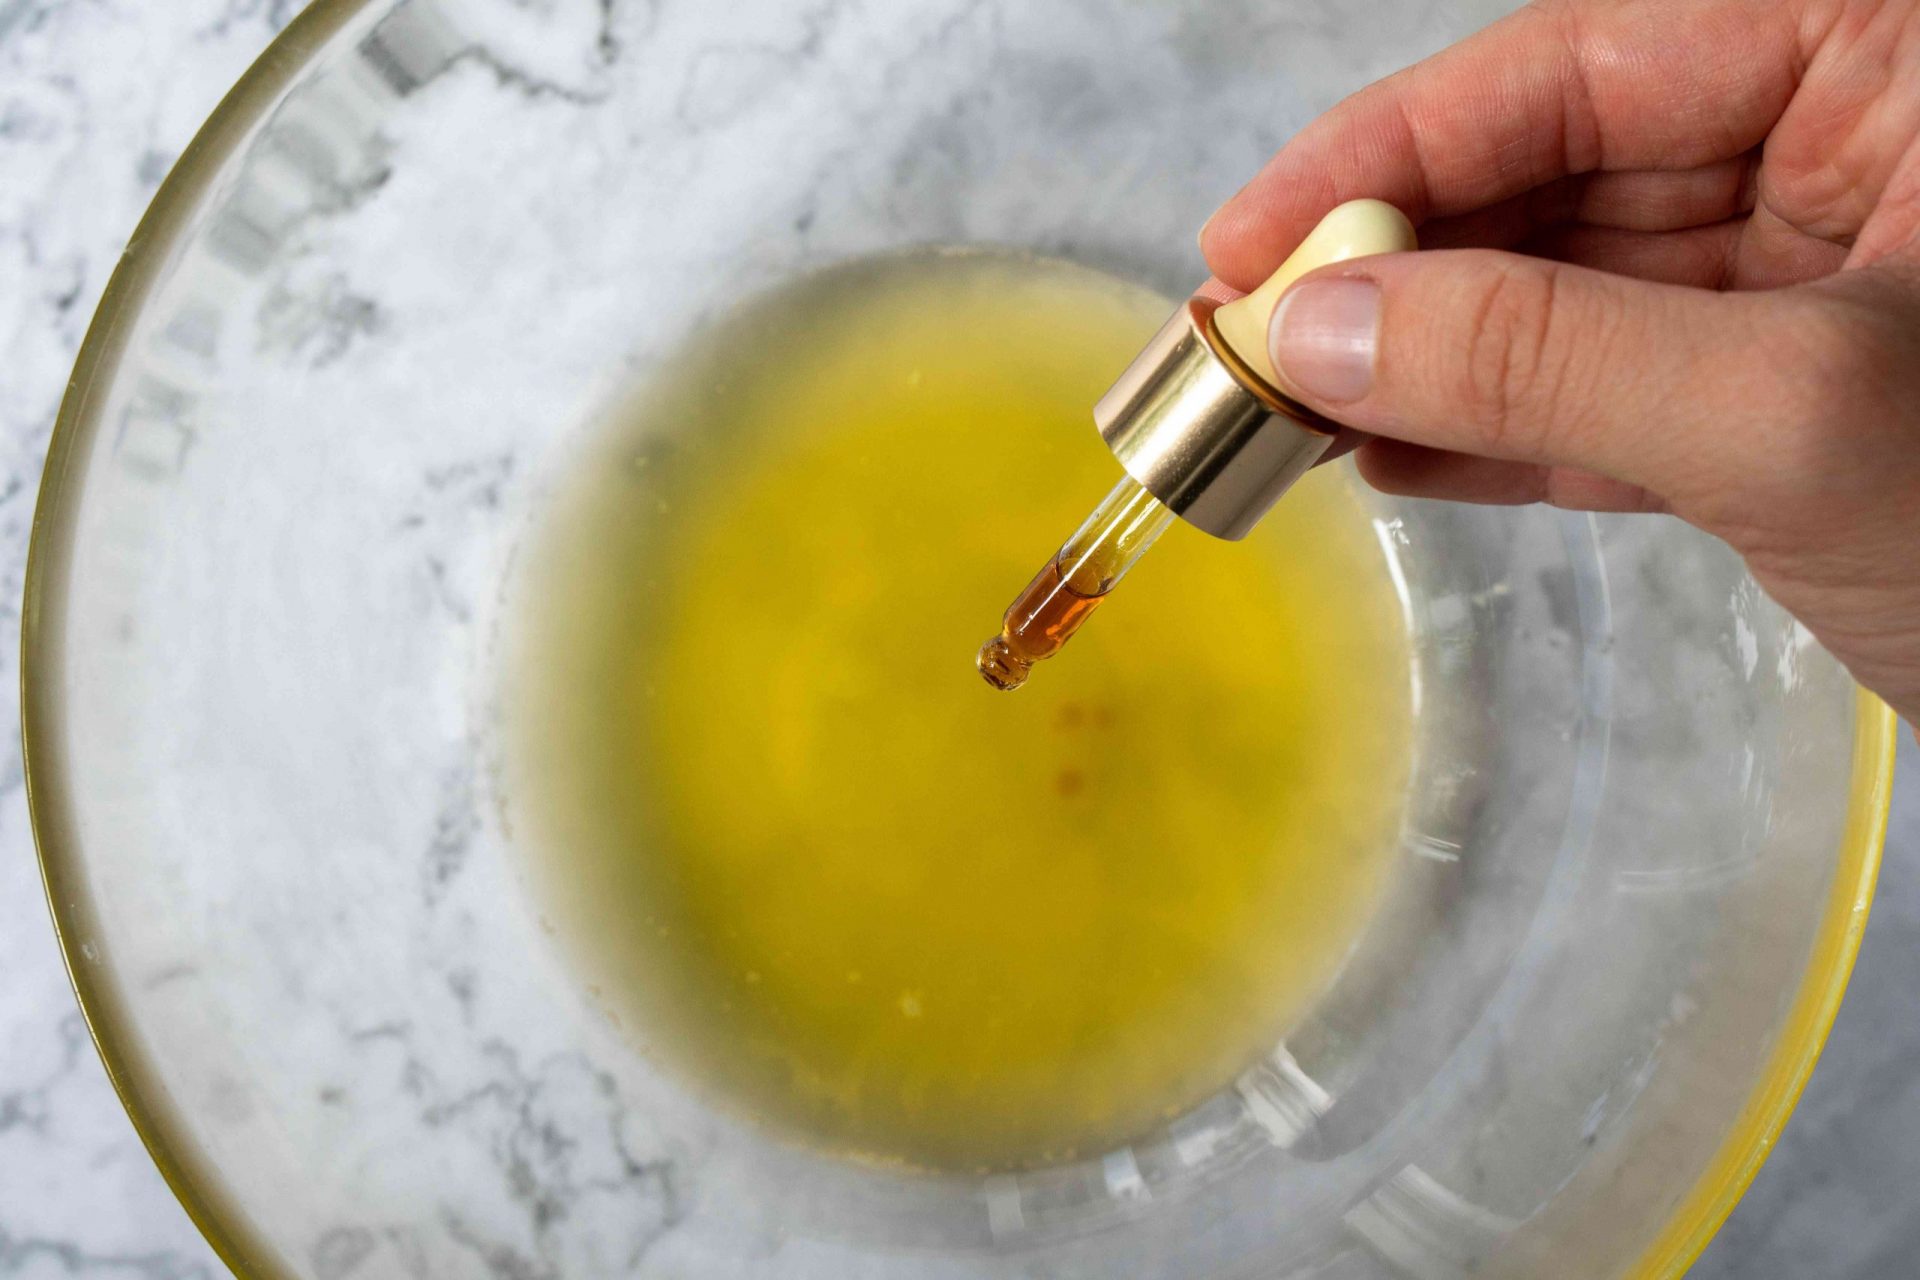 la mano utiliza el cuentagotas para añadir aceites a la manteca de karité derretida en el bol de cristal